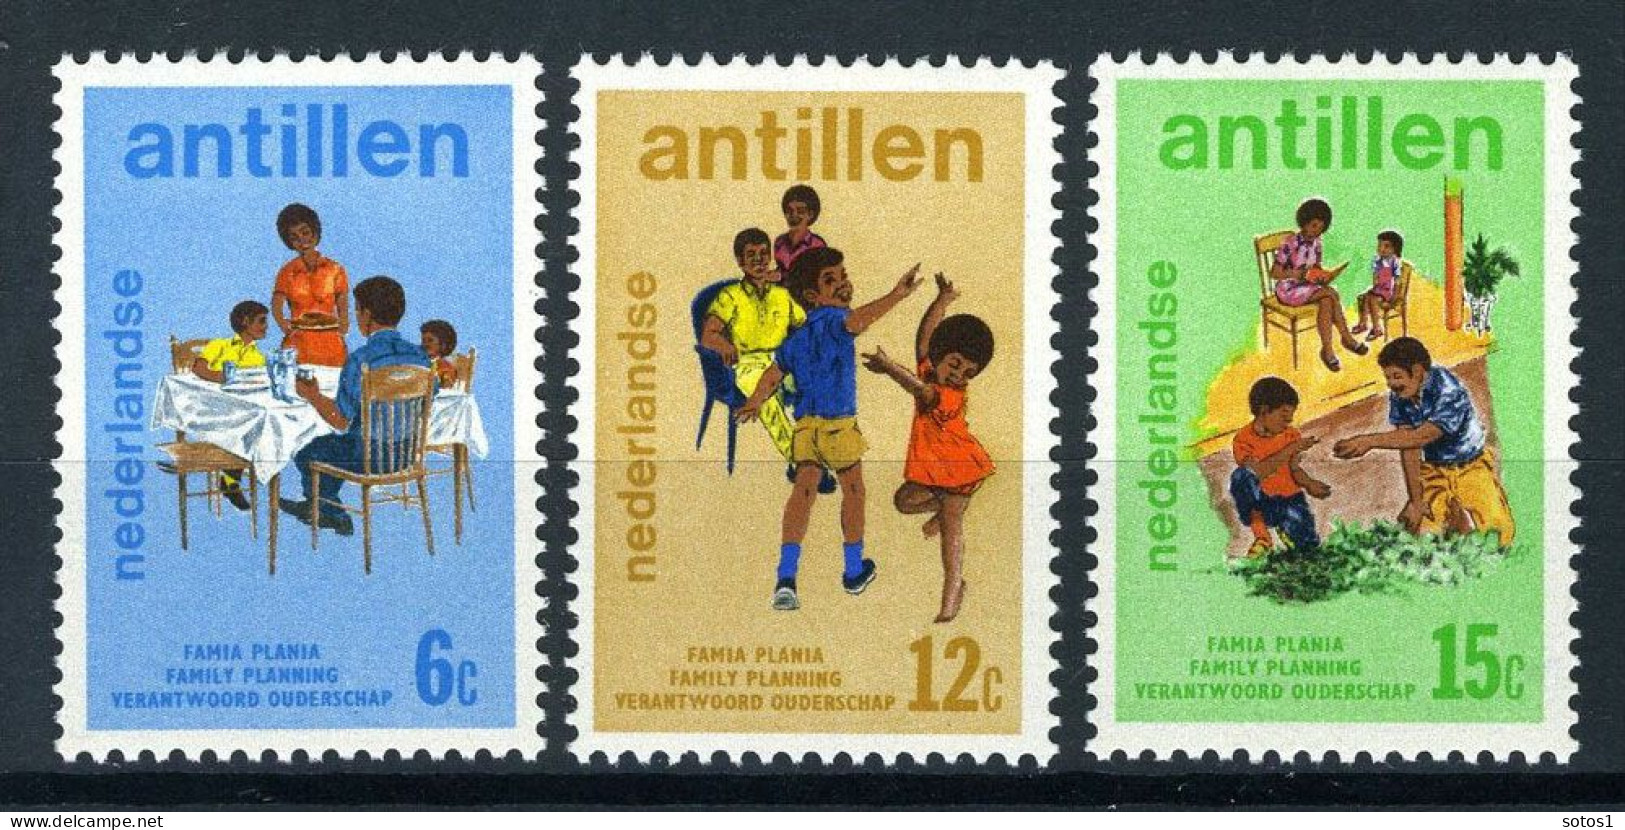 NL. ANTILLEN 486/488 MH 1974 - Verantwoord Ouderschap. - Curaçao, Antilles Neérlandaises, Aruba